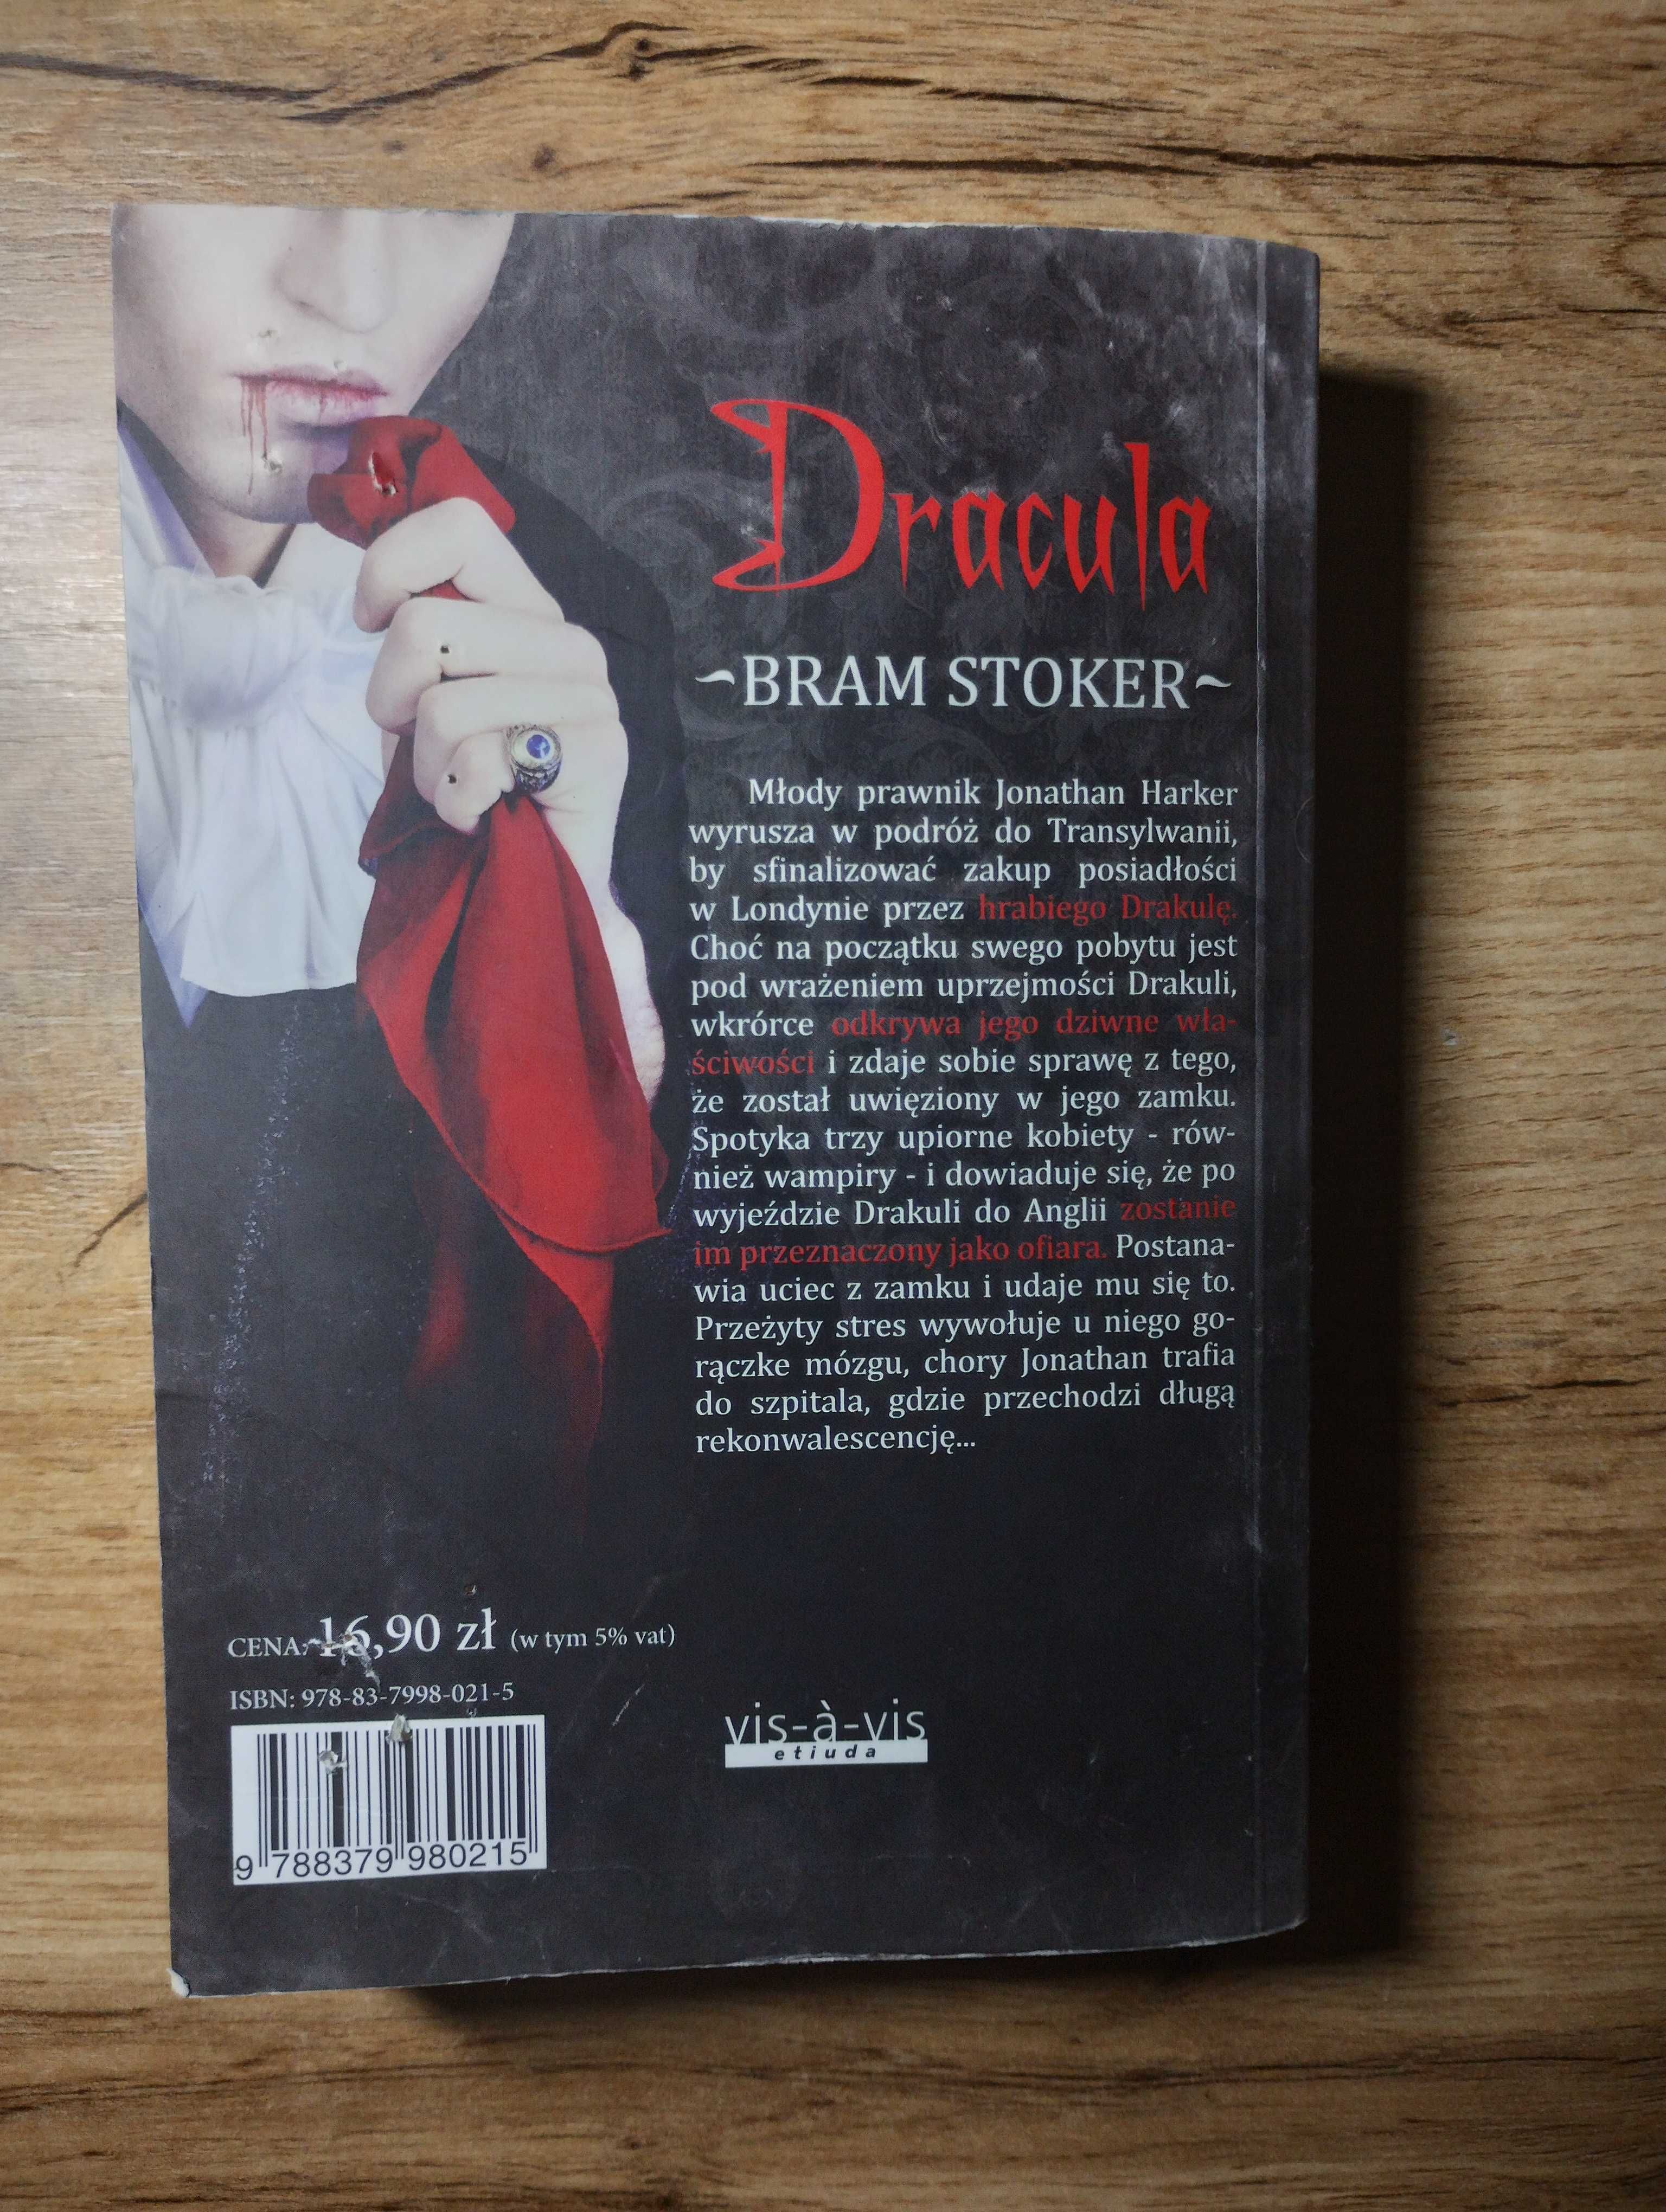 Dracula / Bram Stoker